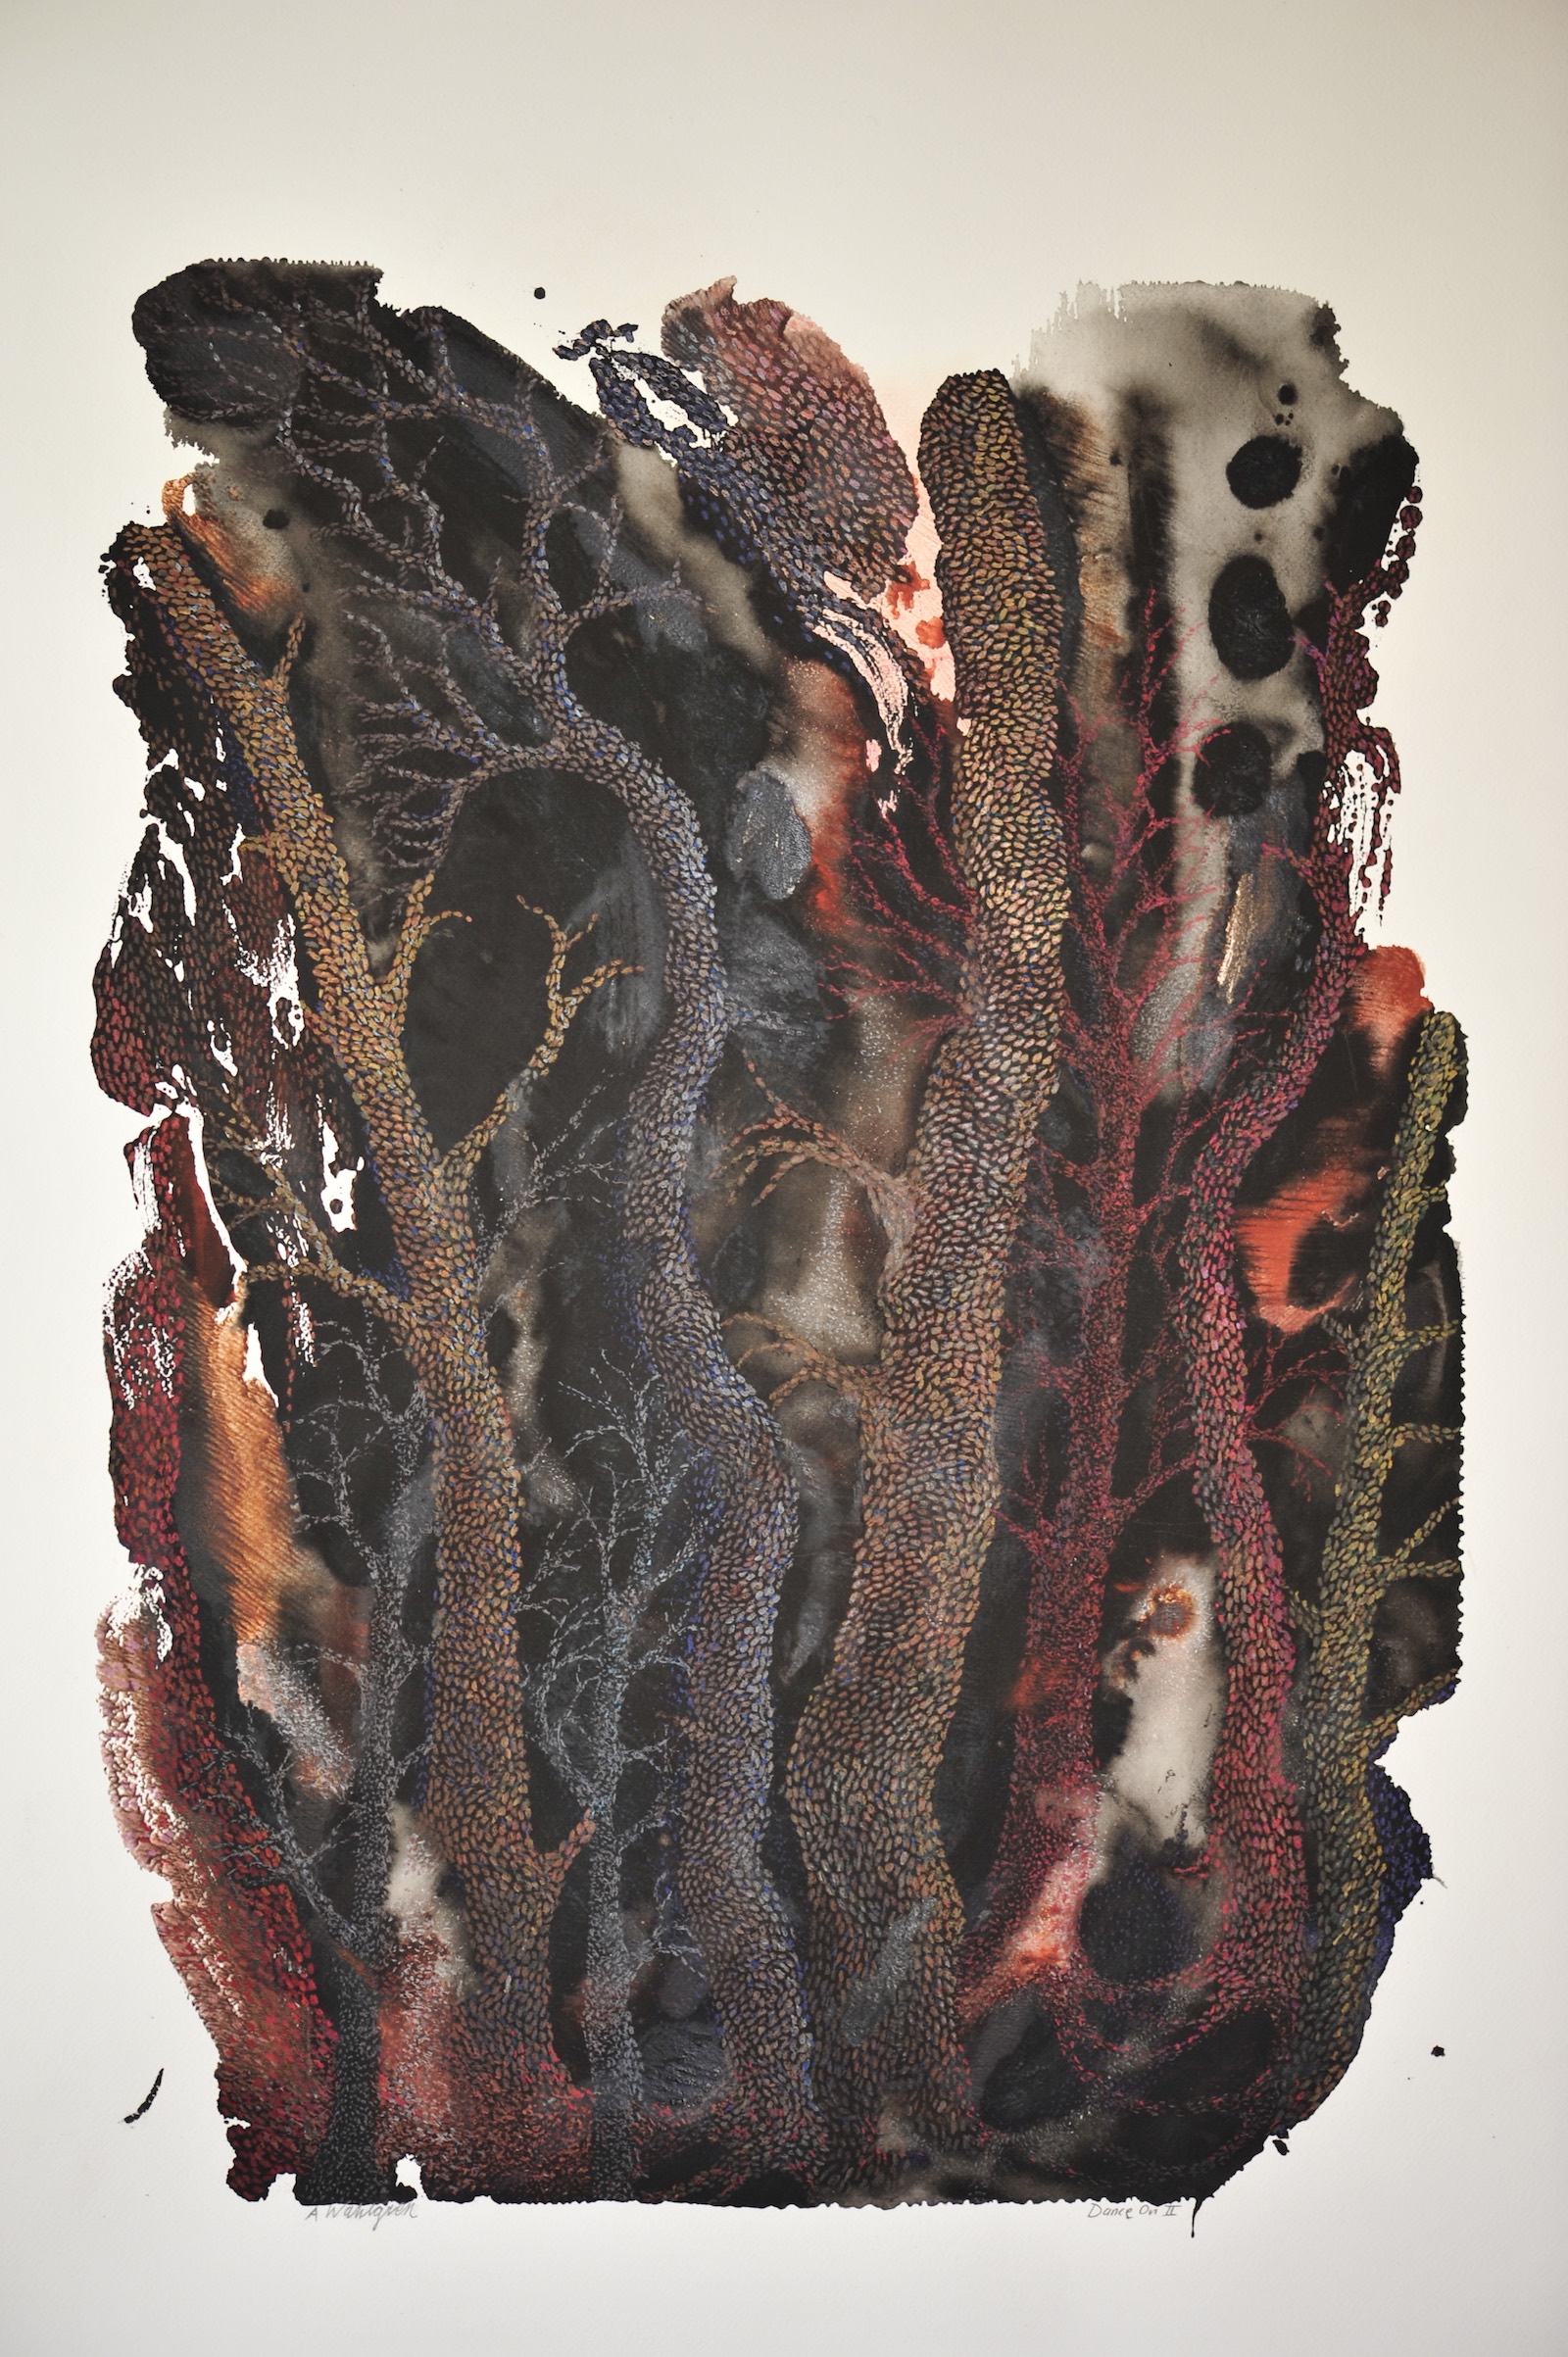 Målning med organiska former i svart, brunt och rött.